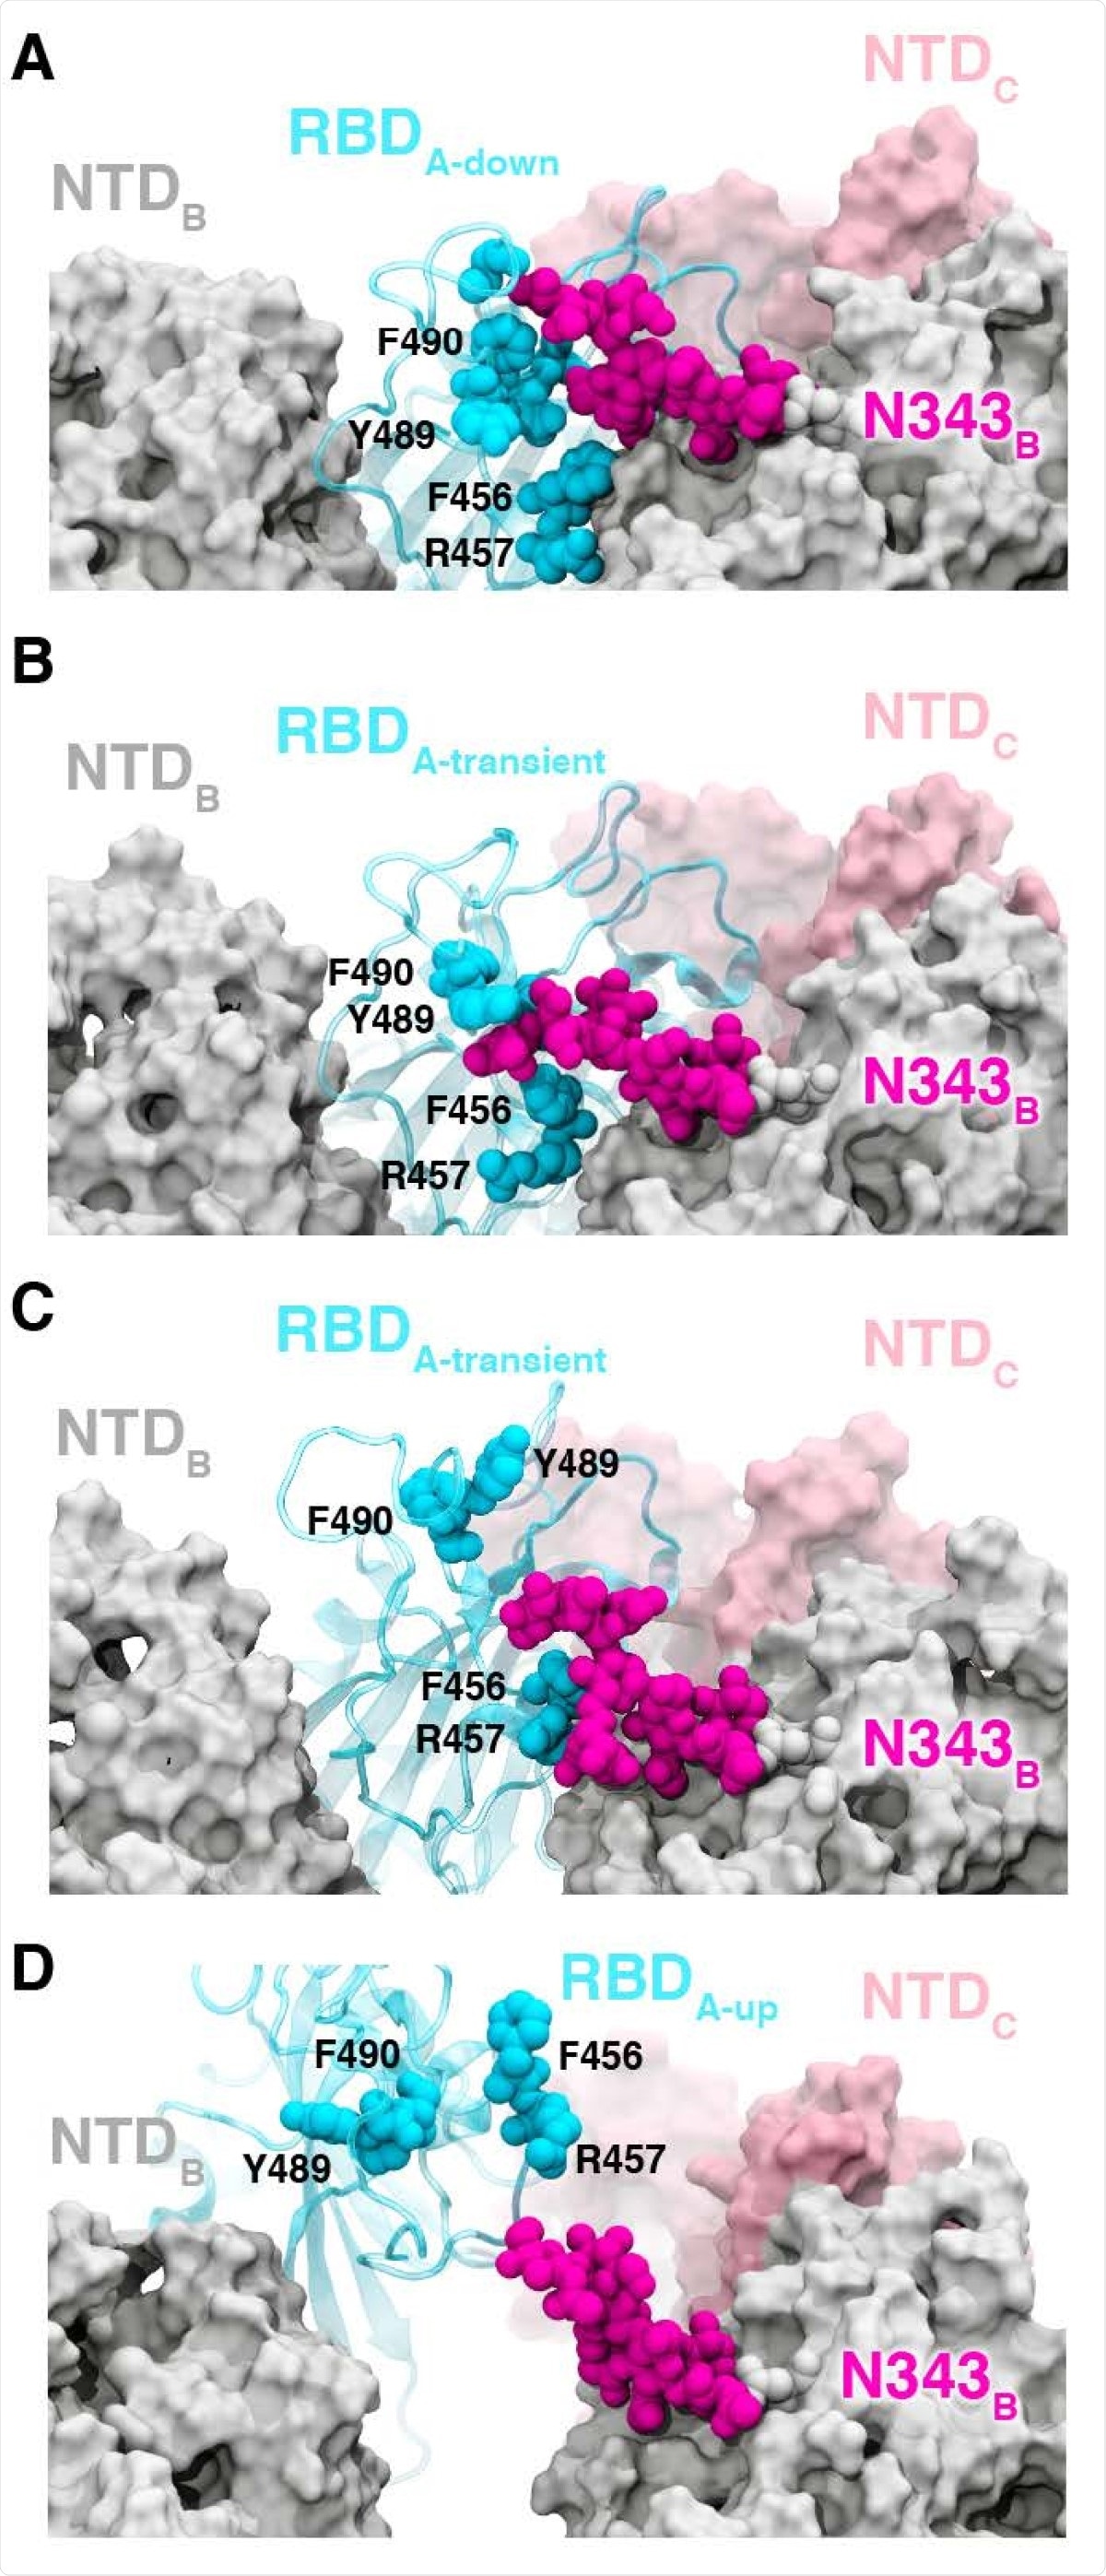 Puerta de glicano por N343.  (AD) Configuraciones instantáneas a lo largo de la ruta de apertura con la serie A mostrada en cian, la serie B en gris, la serie C en rosa y los glucanos en la posición N343 mostrados en magenta.  (A) El RBD A en la conformación inferior está protegido por glucanos en la posición N343 del RBD B (BD) adyacente. Los glucanos N343 interfieren entre y debajo de los residuos F490, Y489, F456 y F457 para empujar el RBD hacia arriba y abrirse (d).